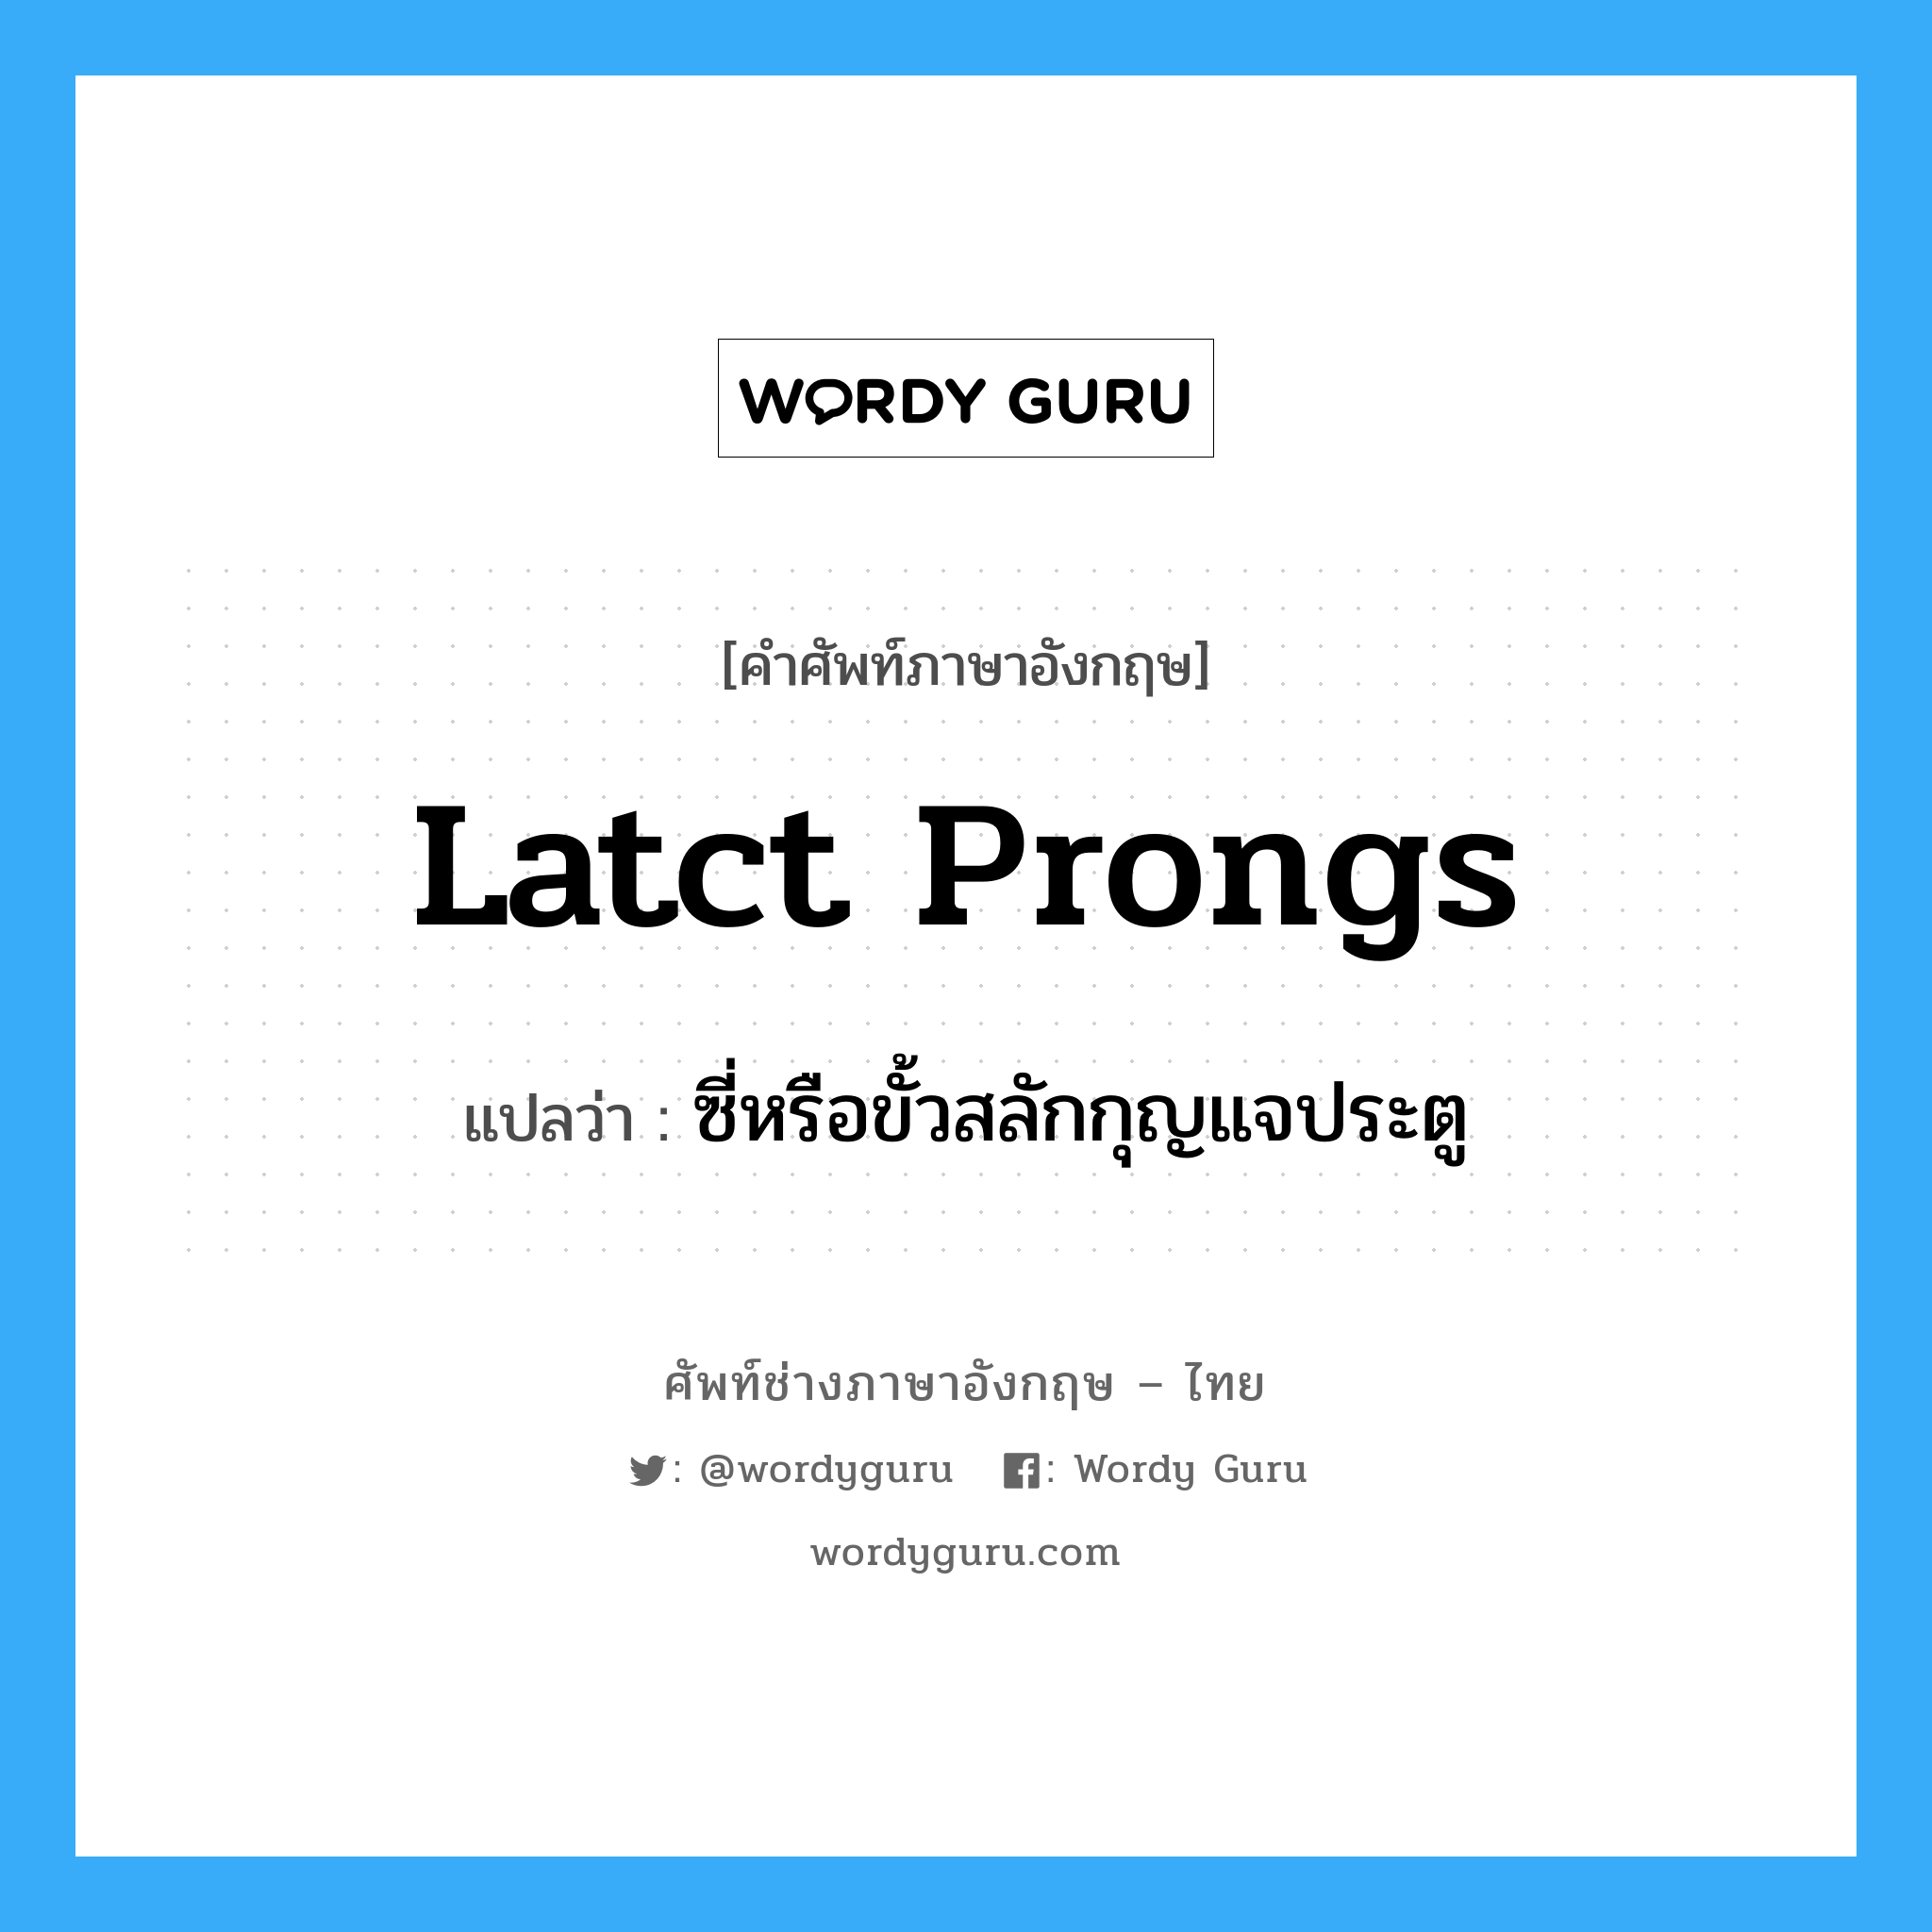 latct prongs แปลว่า?, คำศัพท์ช่างภาษาอังกฤษ - ไทย latct prongs คำศัพท์ภาษาอังกฤษ latct prongs แปลว่า ซี่หรือขั้วสลักกุญแจประตู